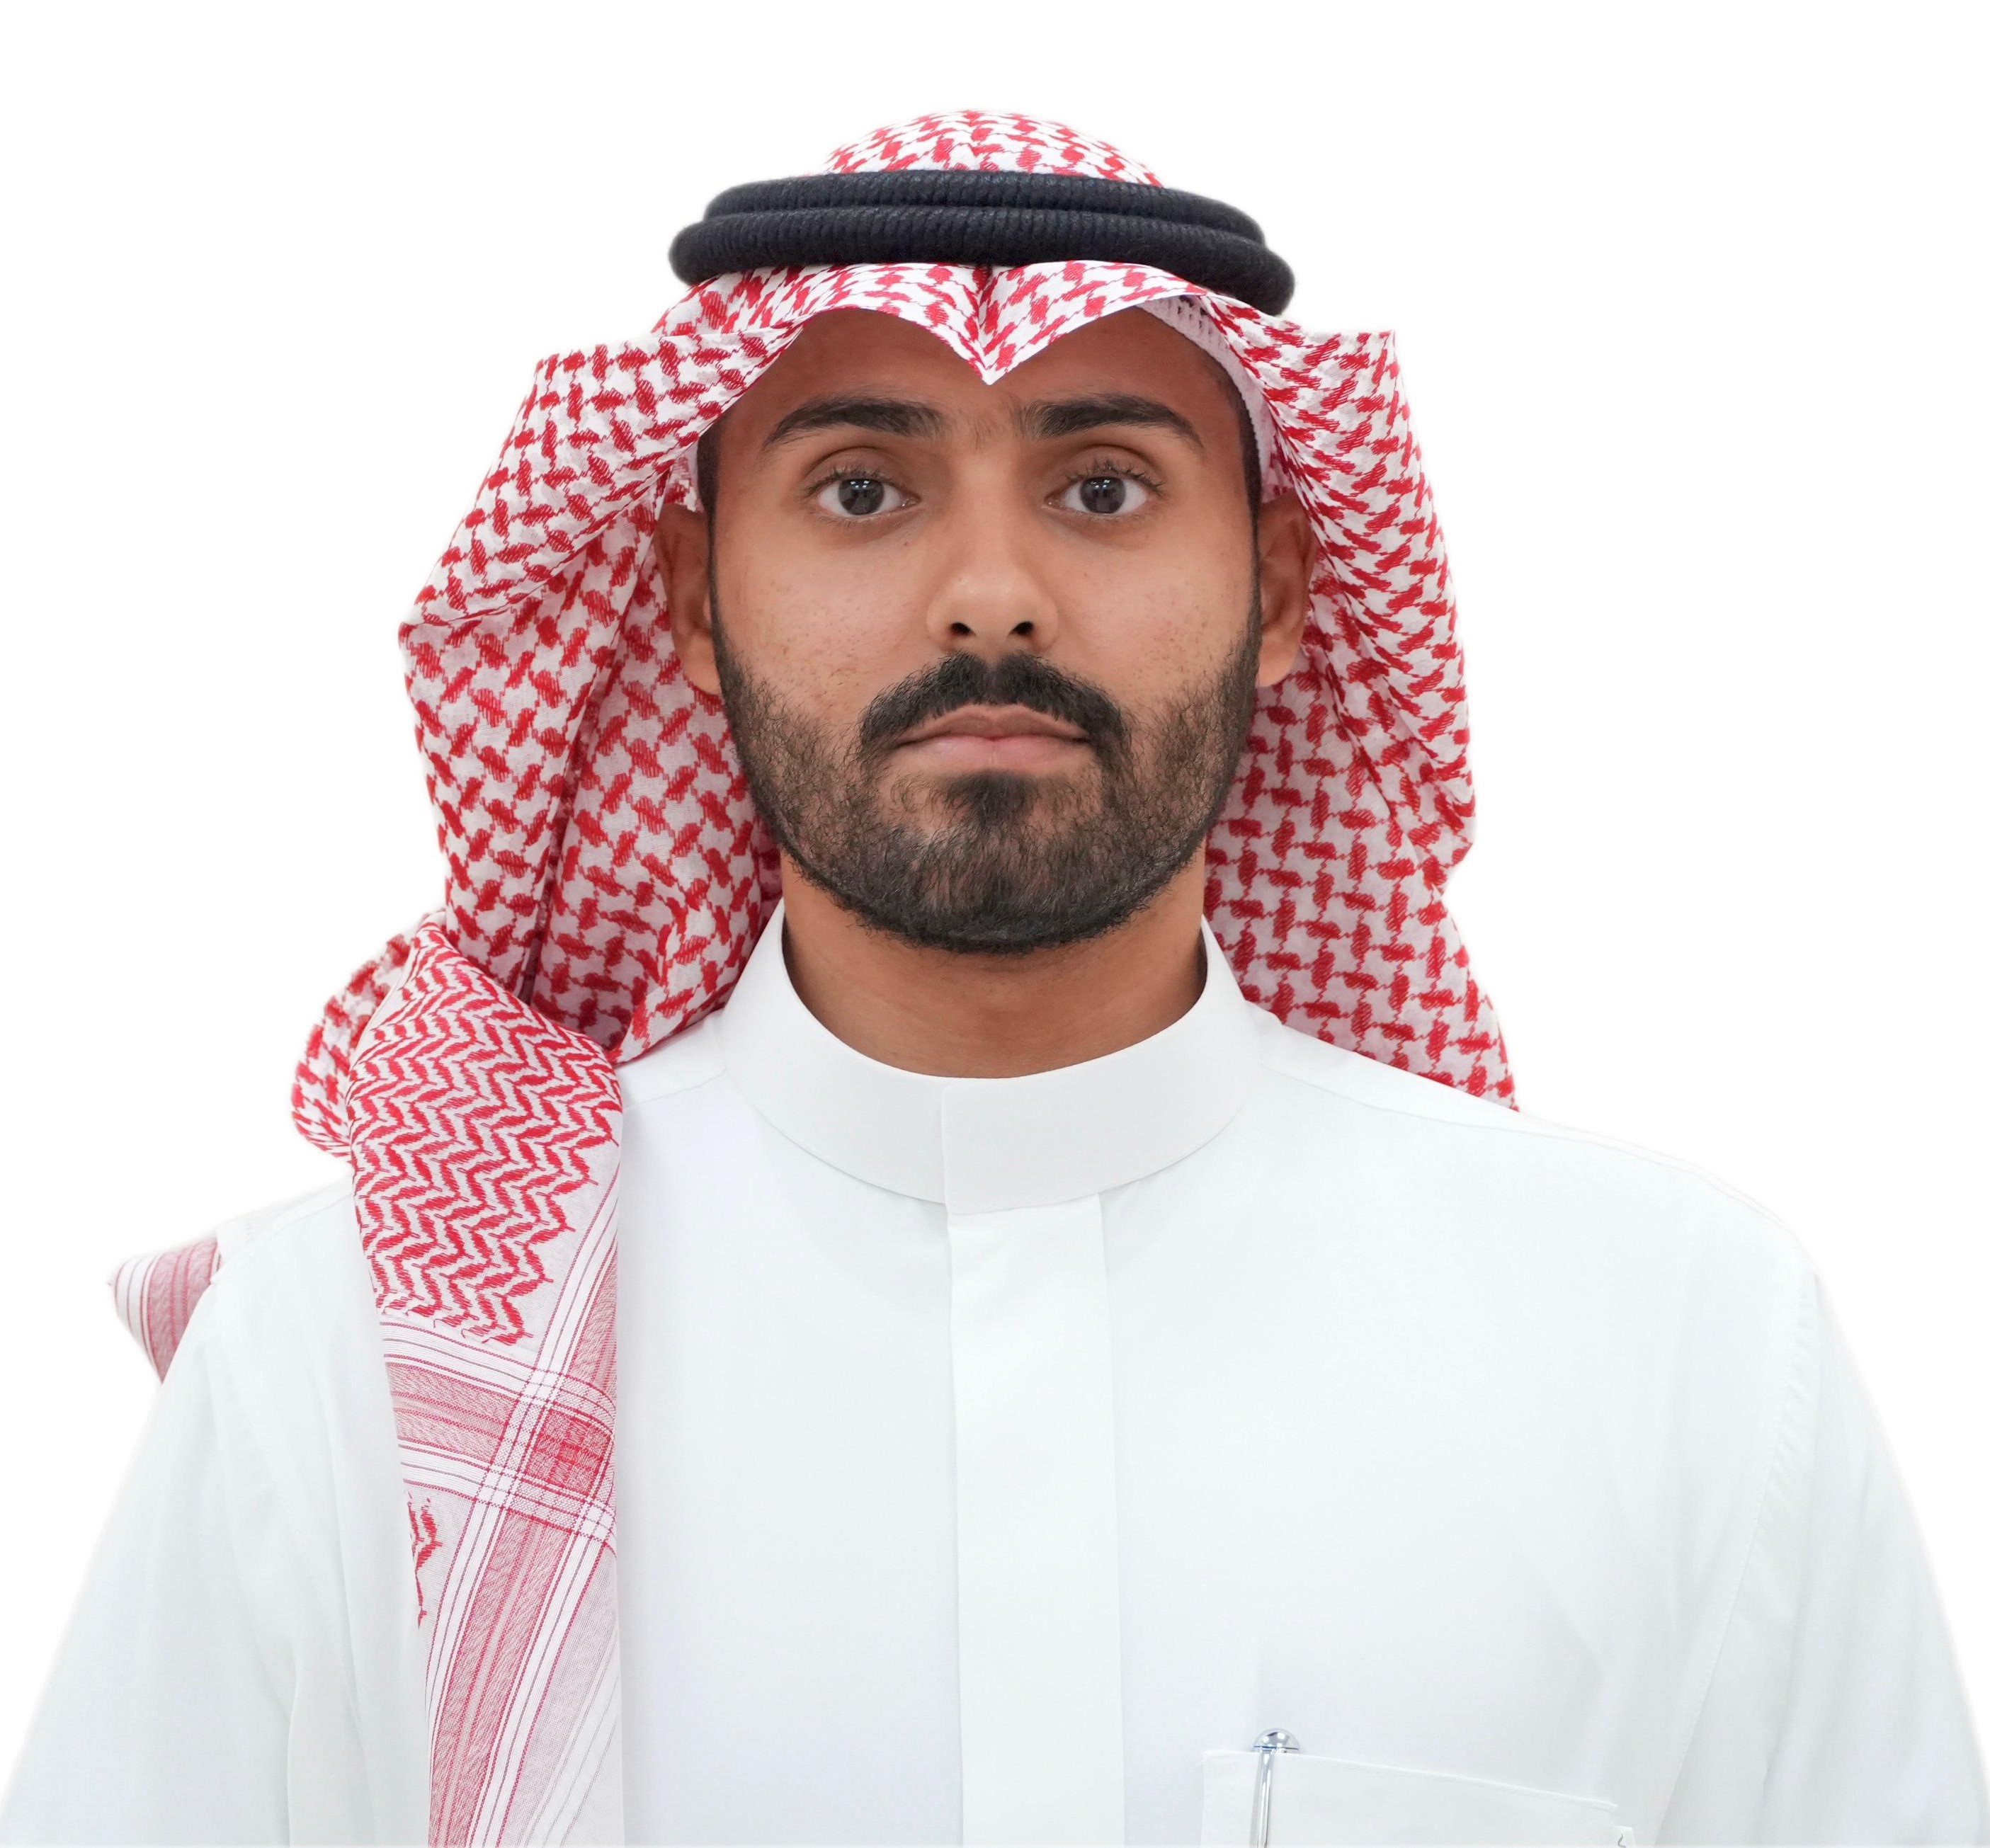 Dr. Ahmed Yahya Mohammed Al-Hakami